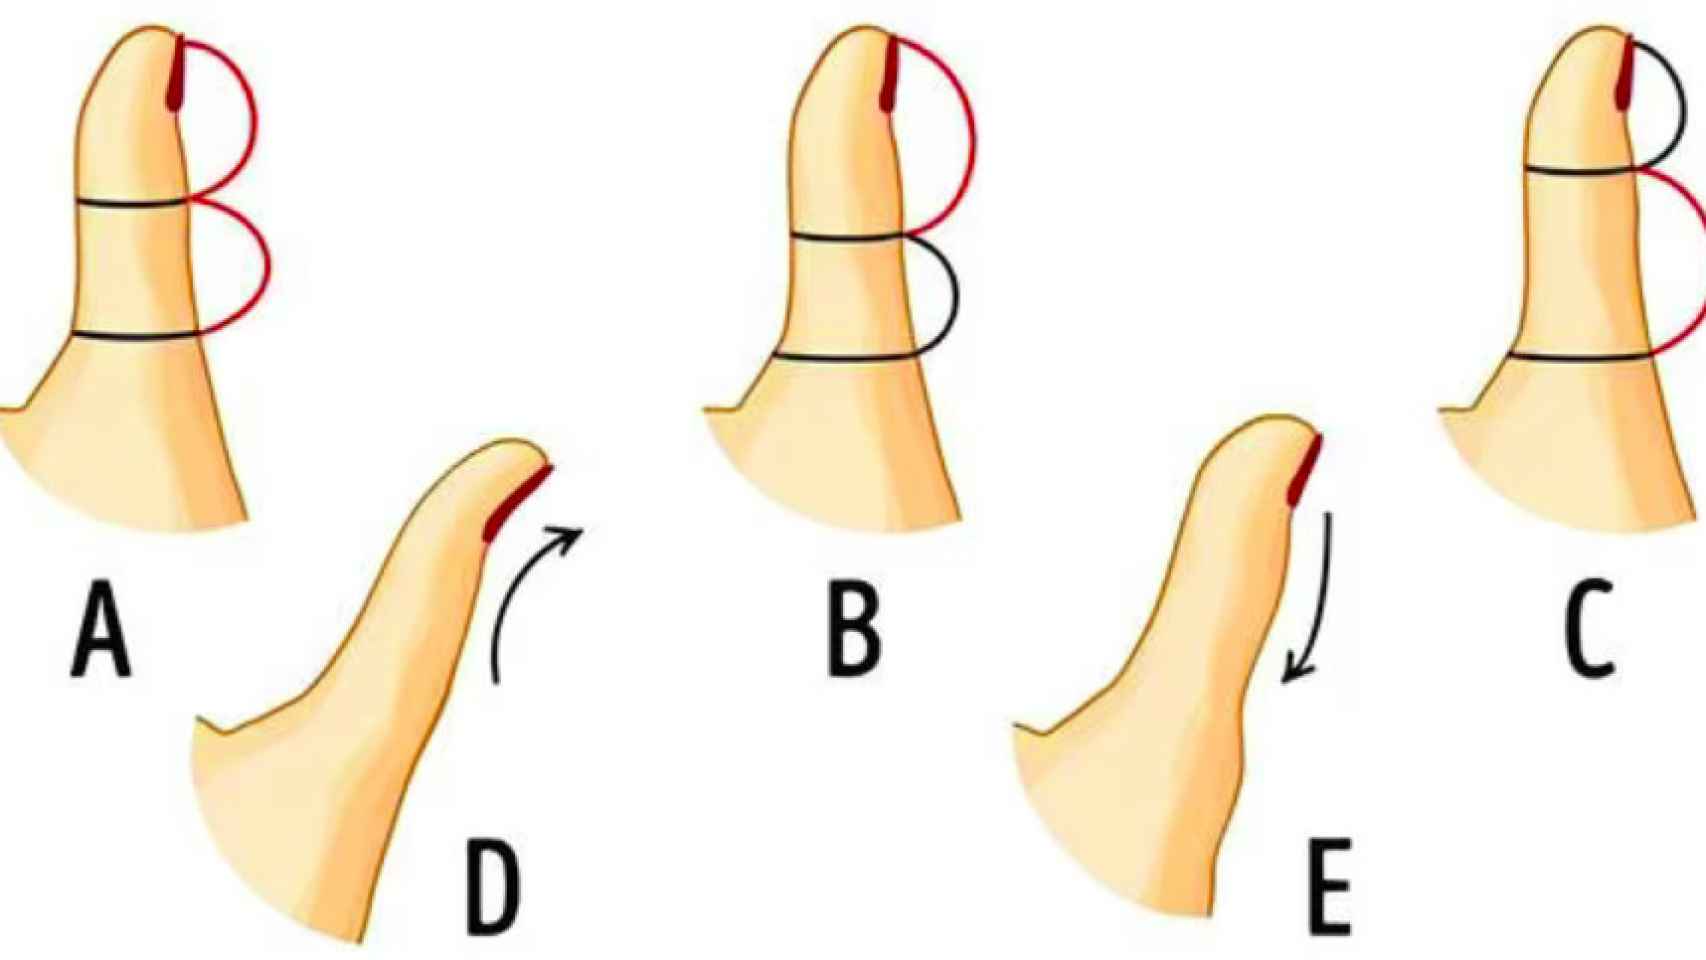 ¿Qué forma tiene tu dedo pulgar?